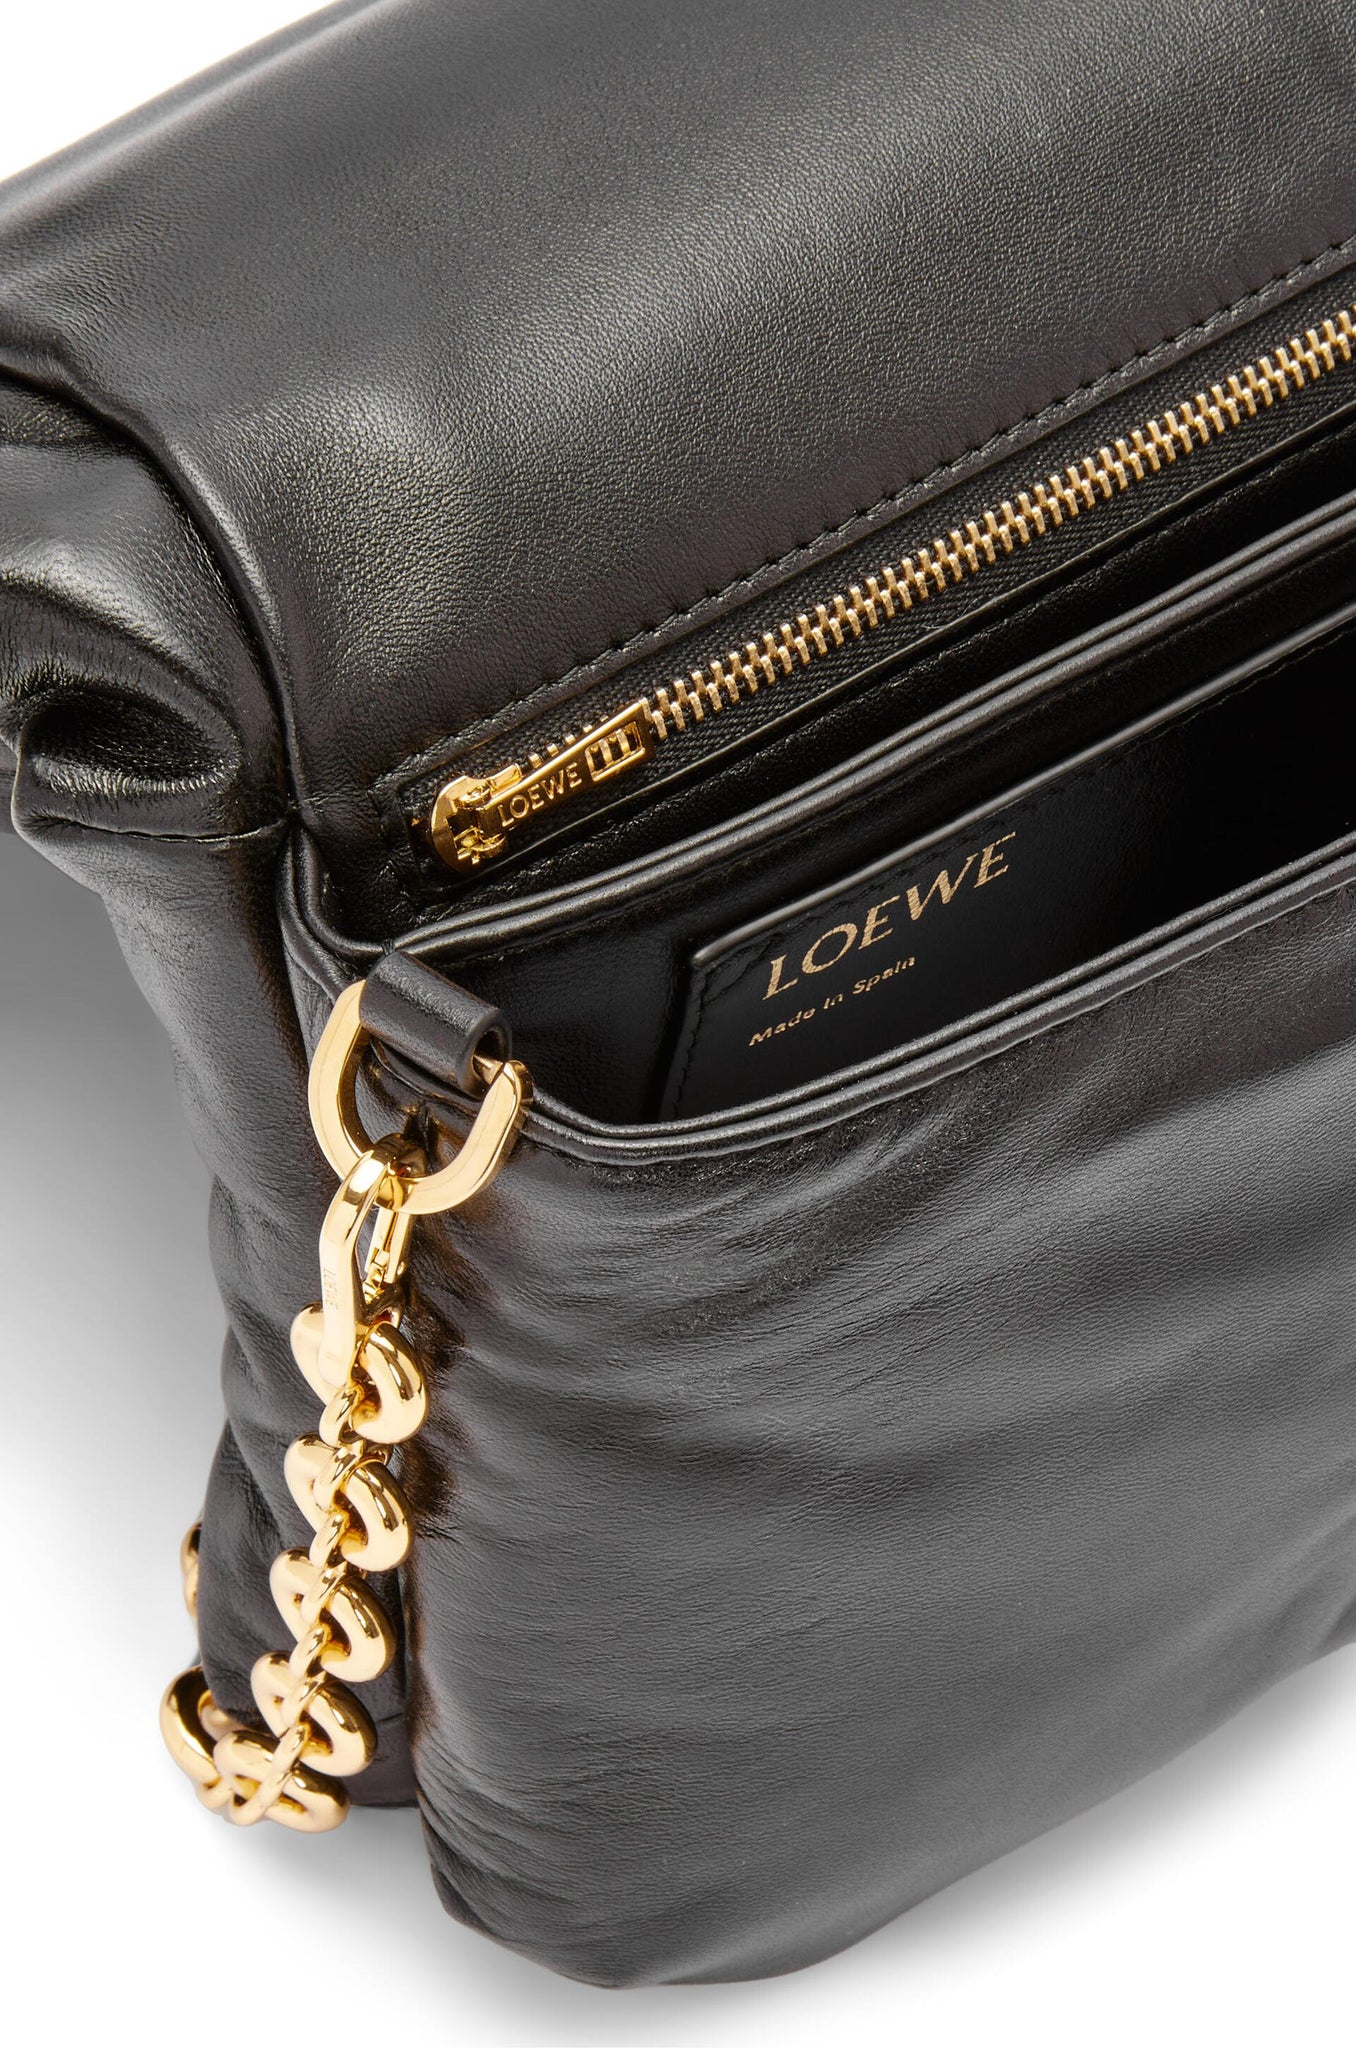 Goya Puffer Mini Leather Shoulder Bag in Black - Loewe